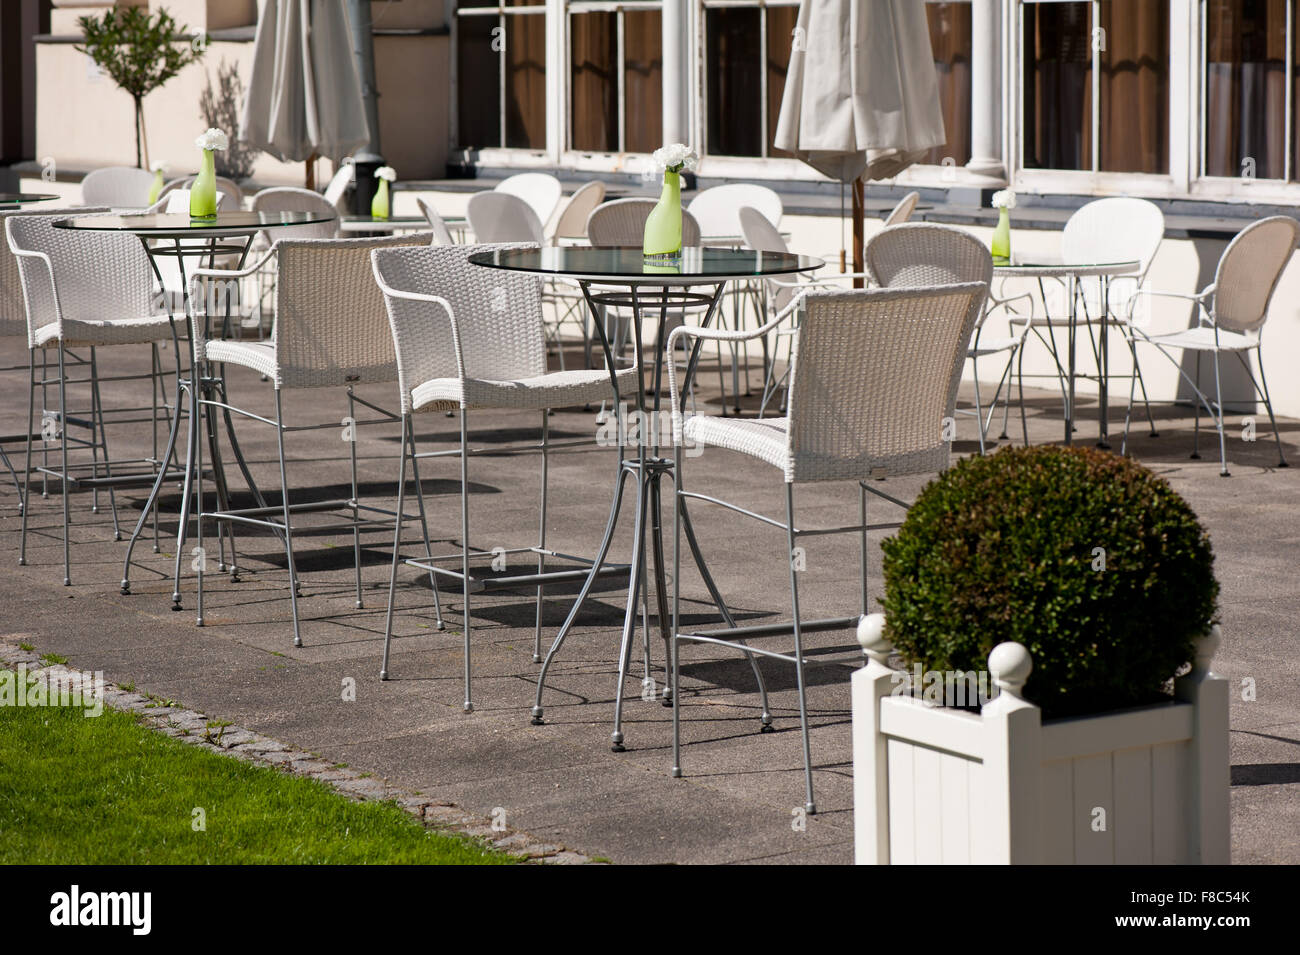 Kinderstühle und Tische im Restaurant Belvedere Gebäude außen, open Air-Food-Service, Außenansicht, leere weiße Stühle... Stockfoto